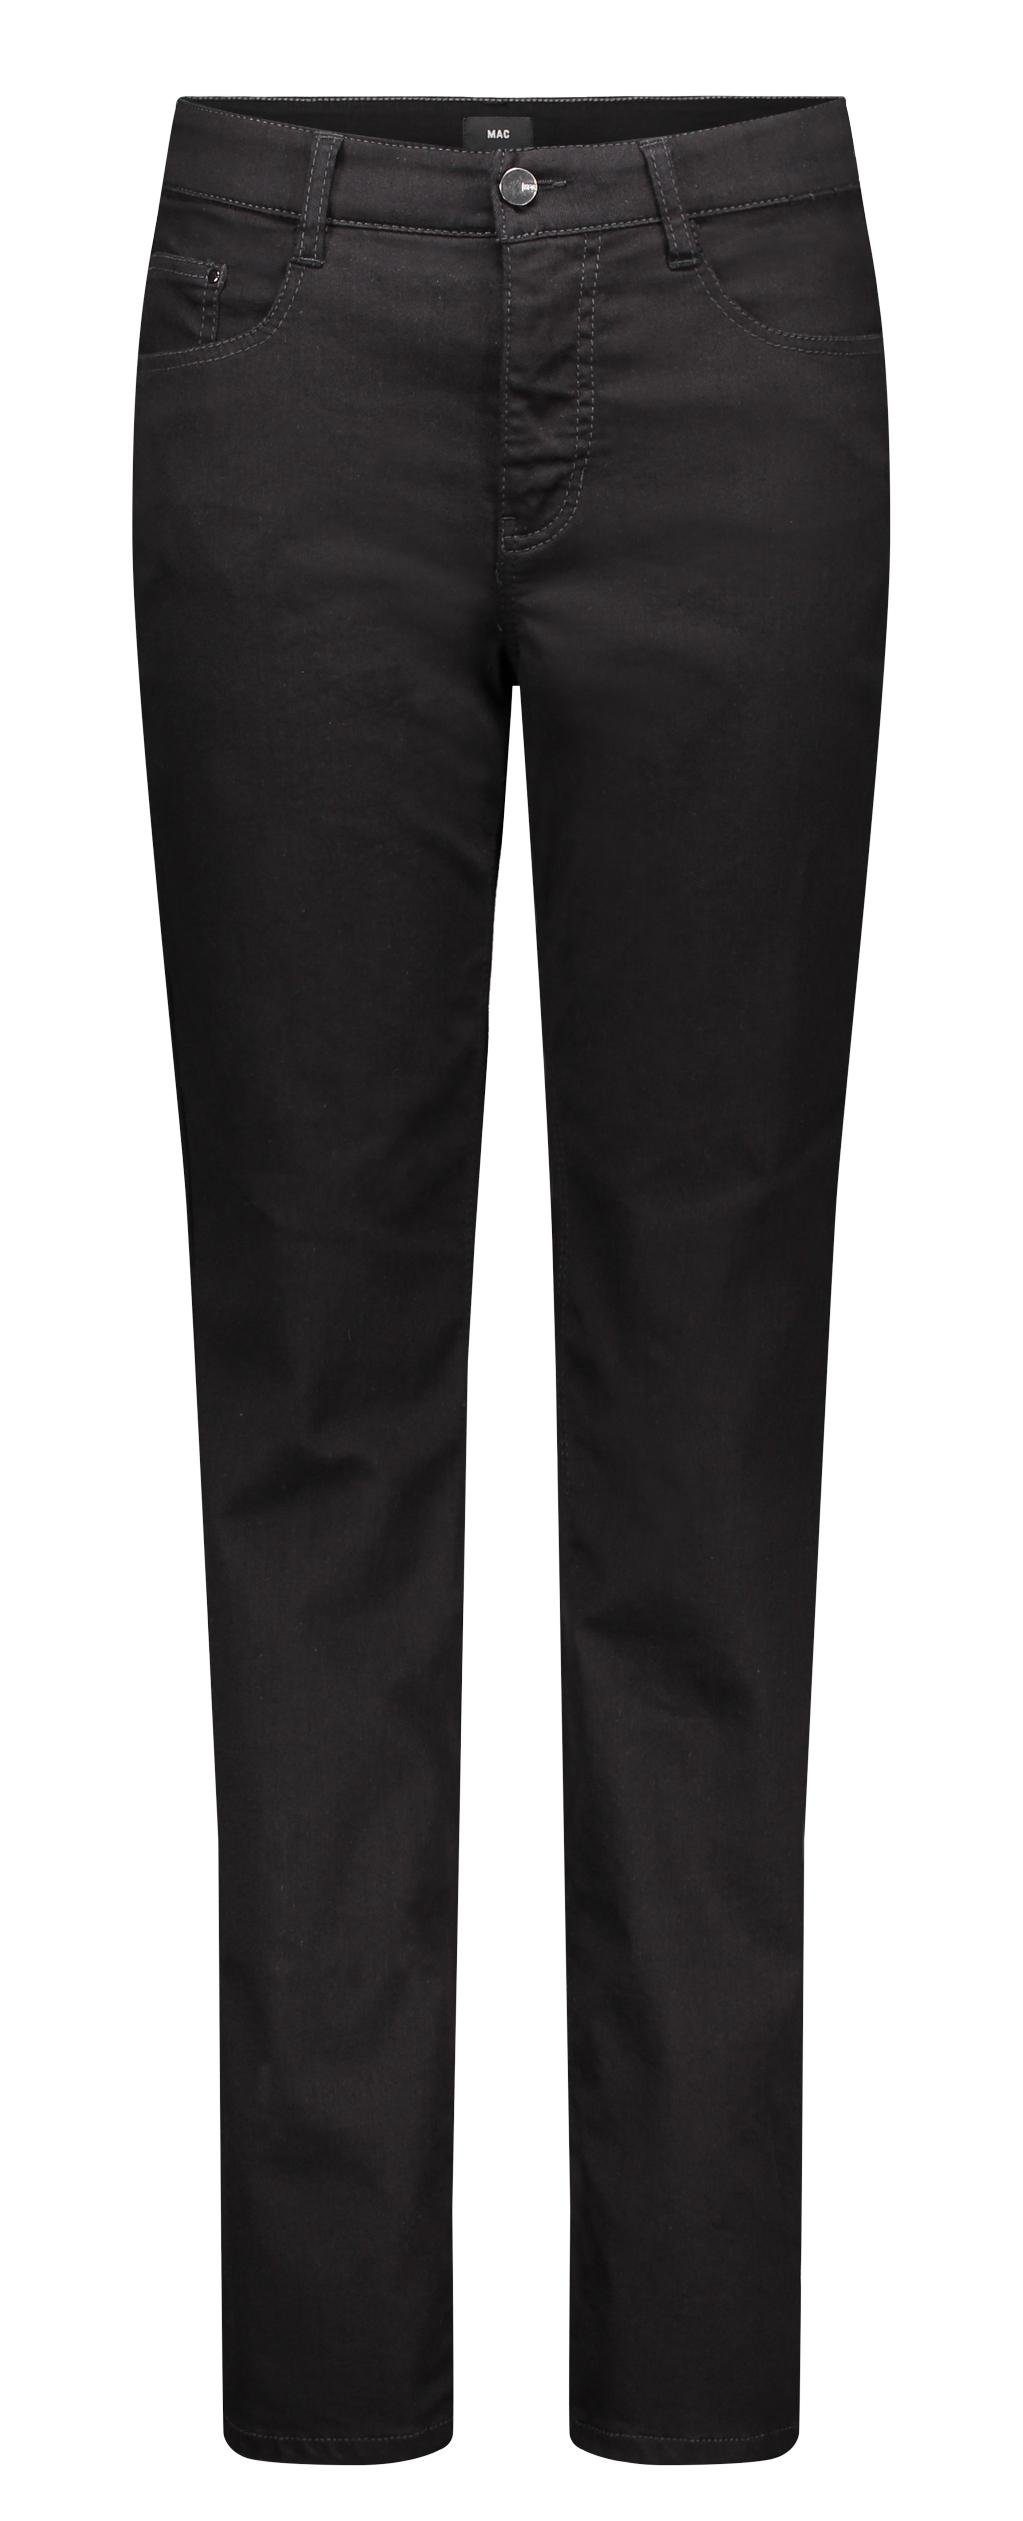 MAC Stretch-Jeans MAC STELLA black black 5100-90-0380 D999